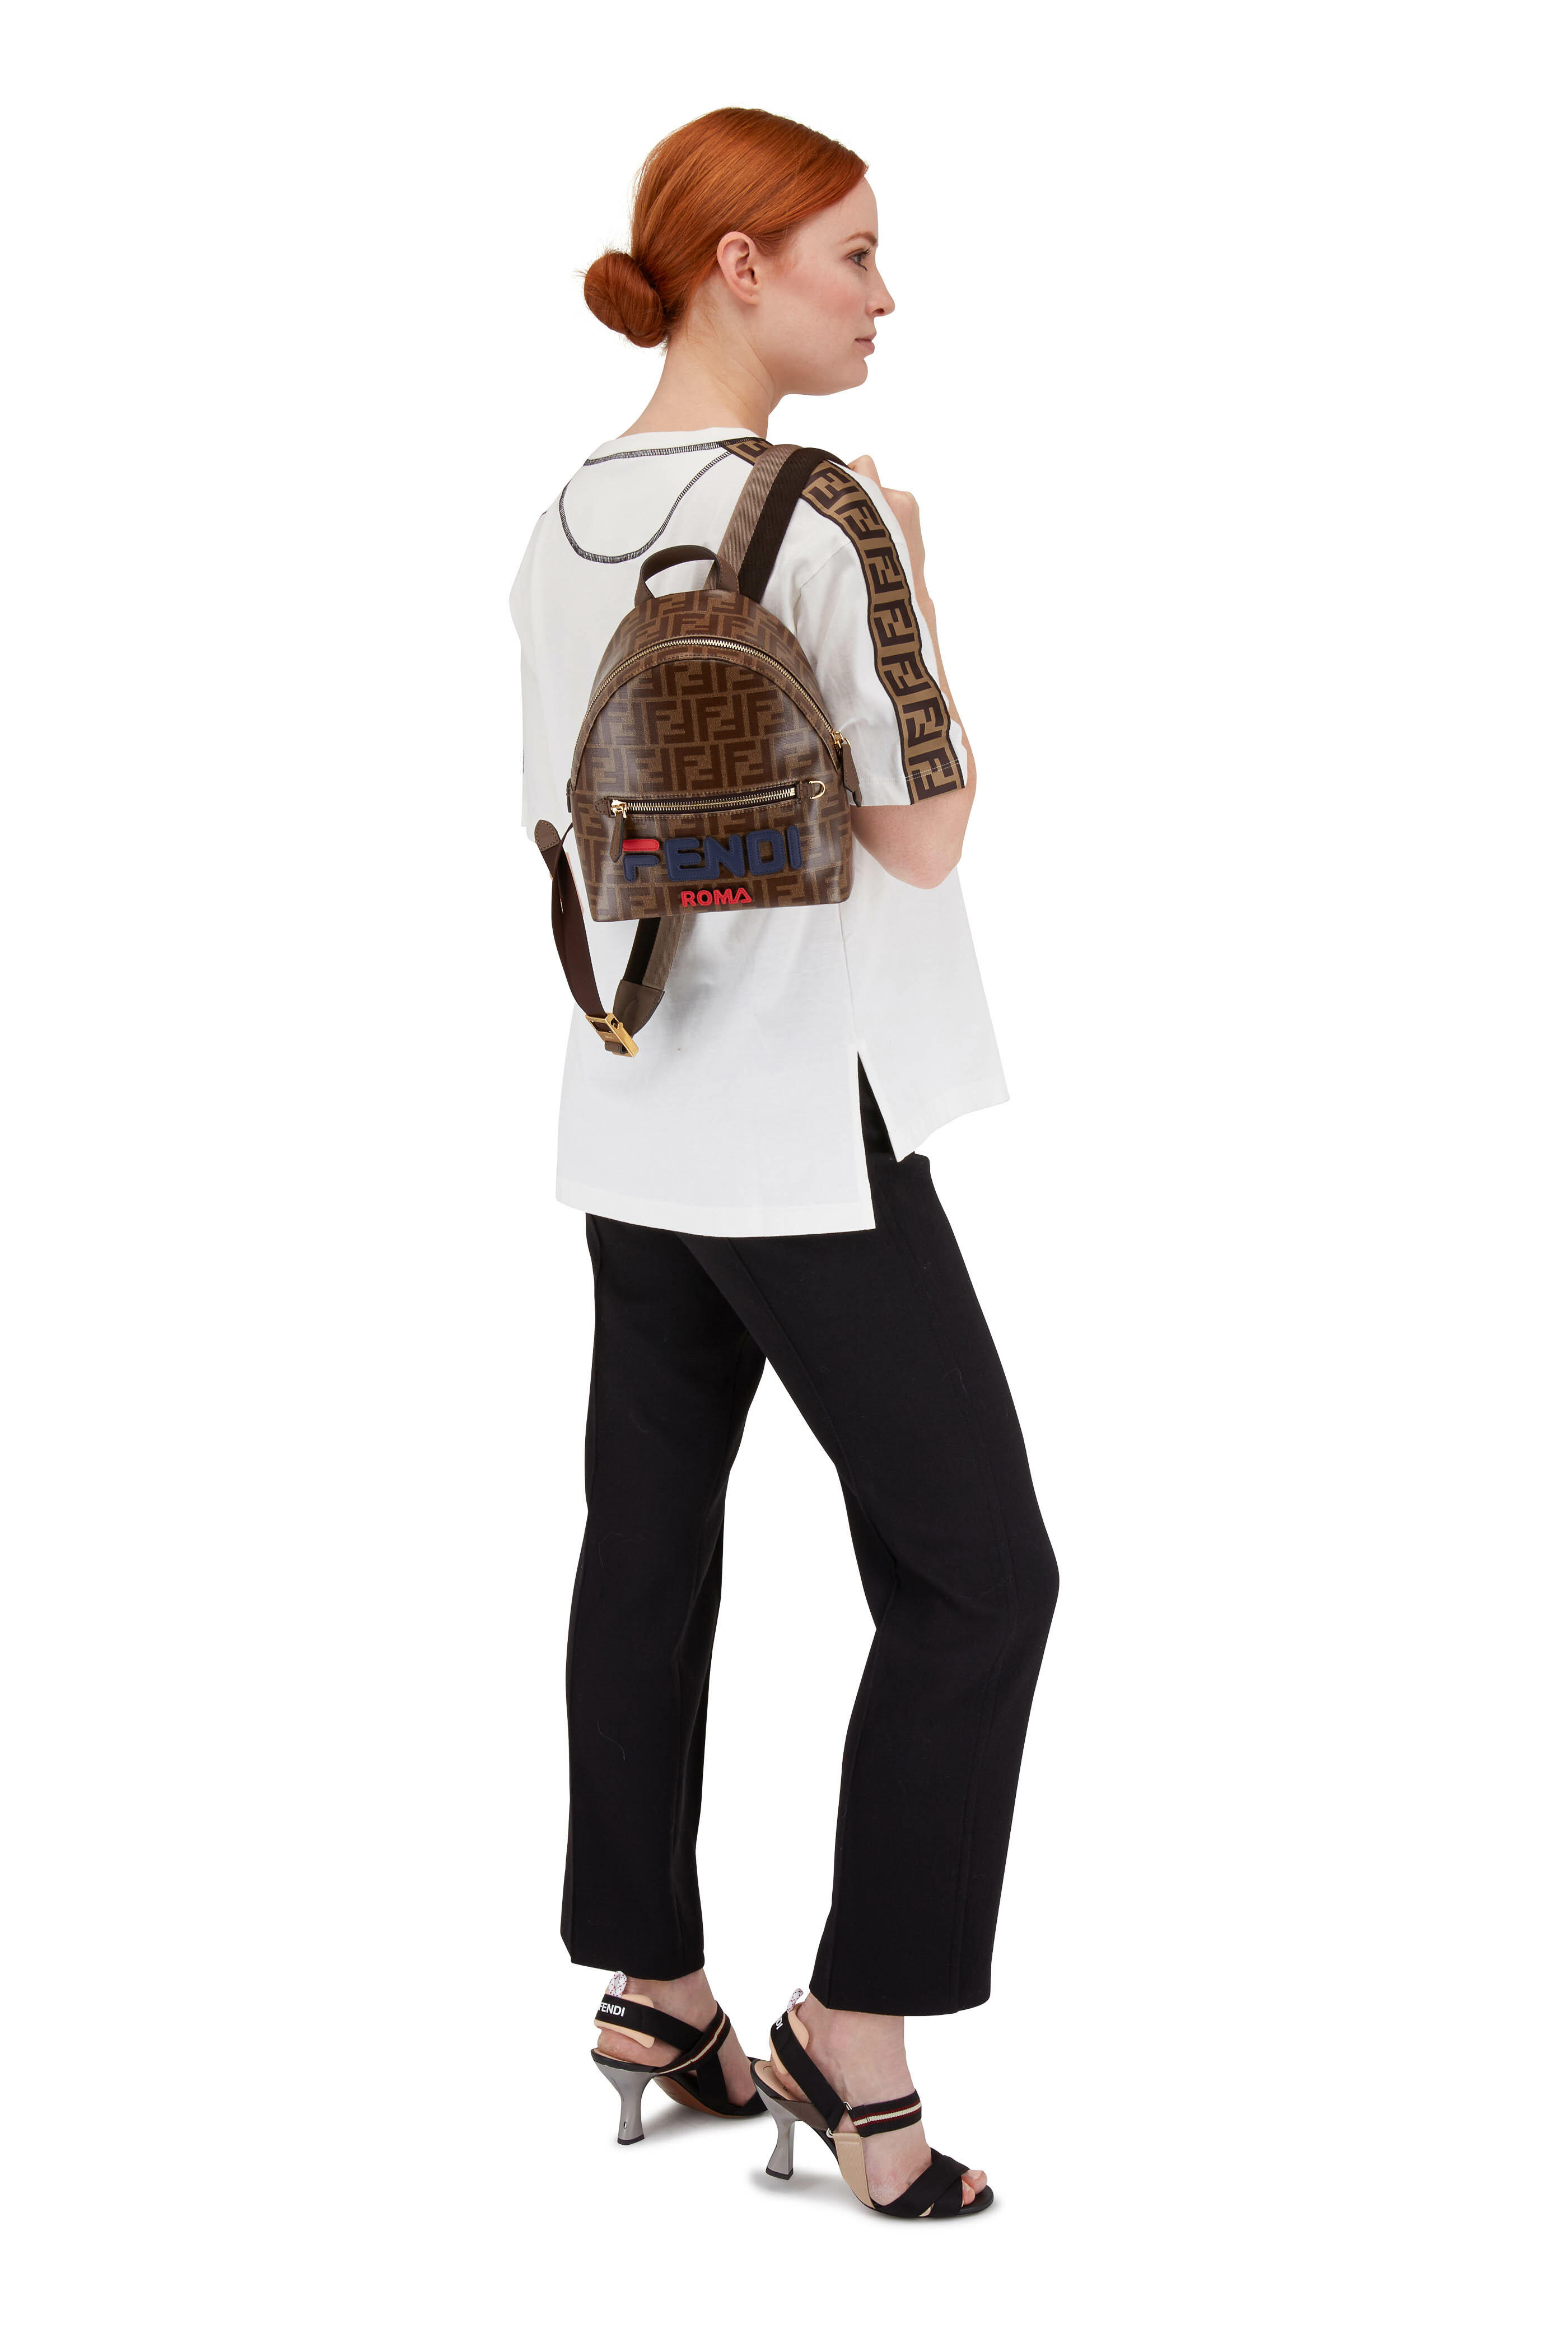 M Monogram Designer Backpack Purse Bag